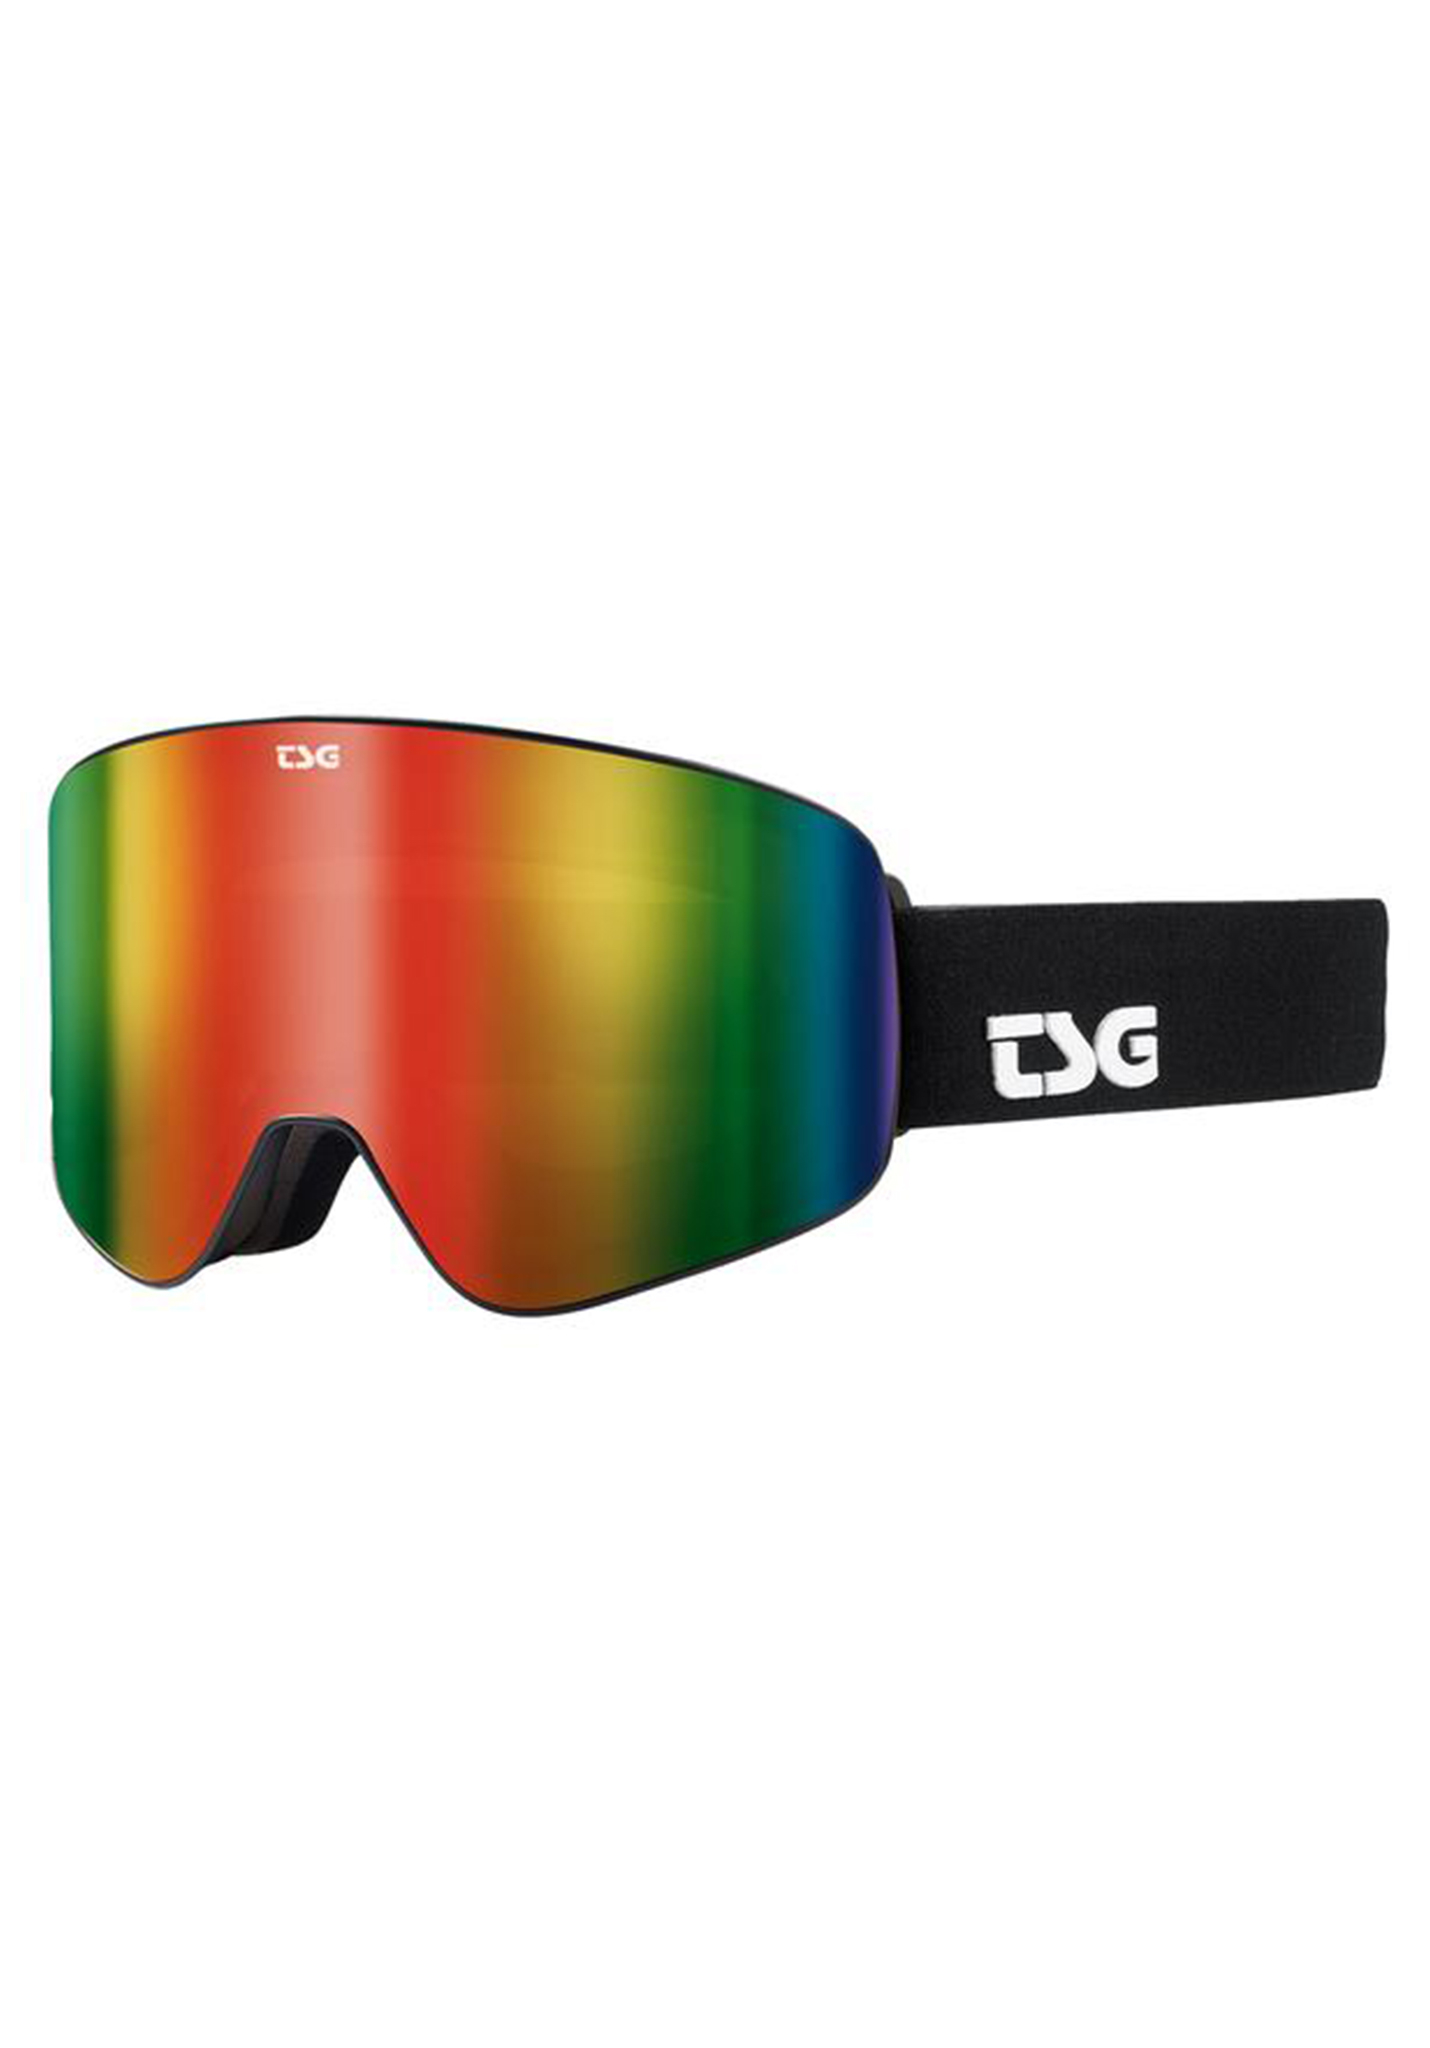 TSG Four Snowboardbrillen schwarz/regenbogen chrom One Size